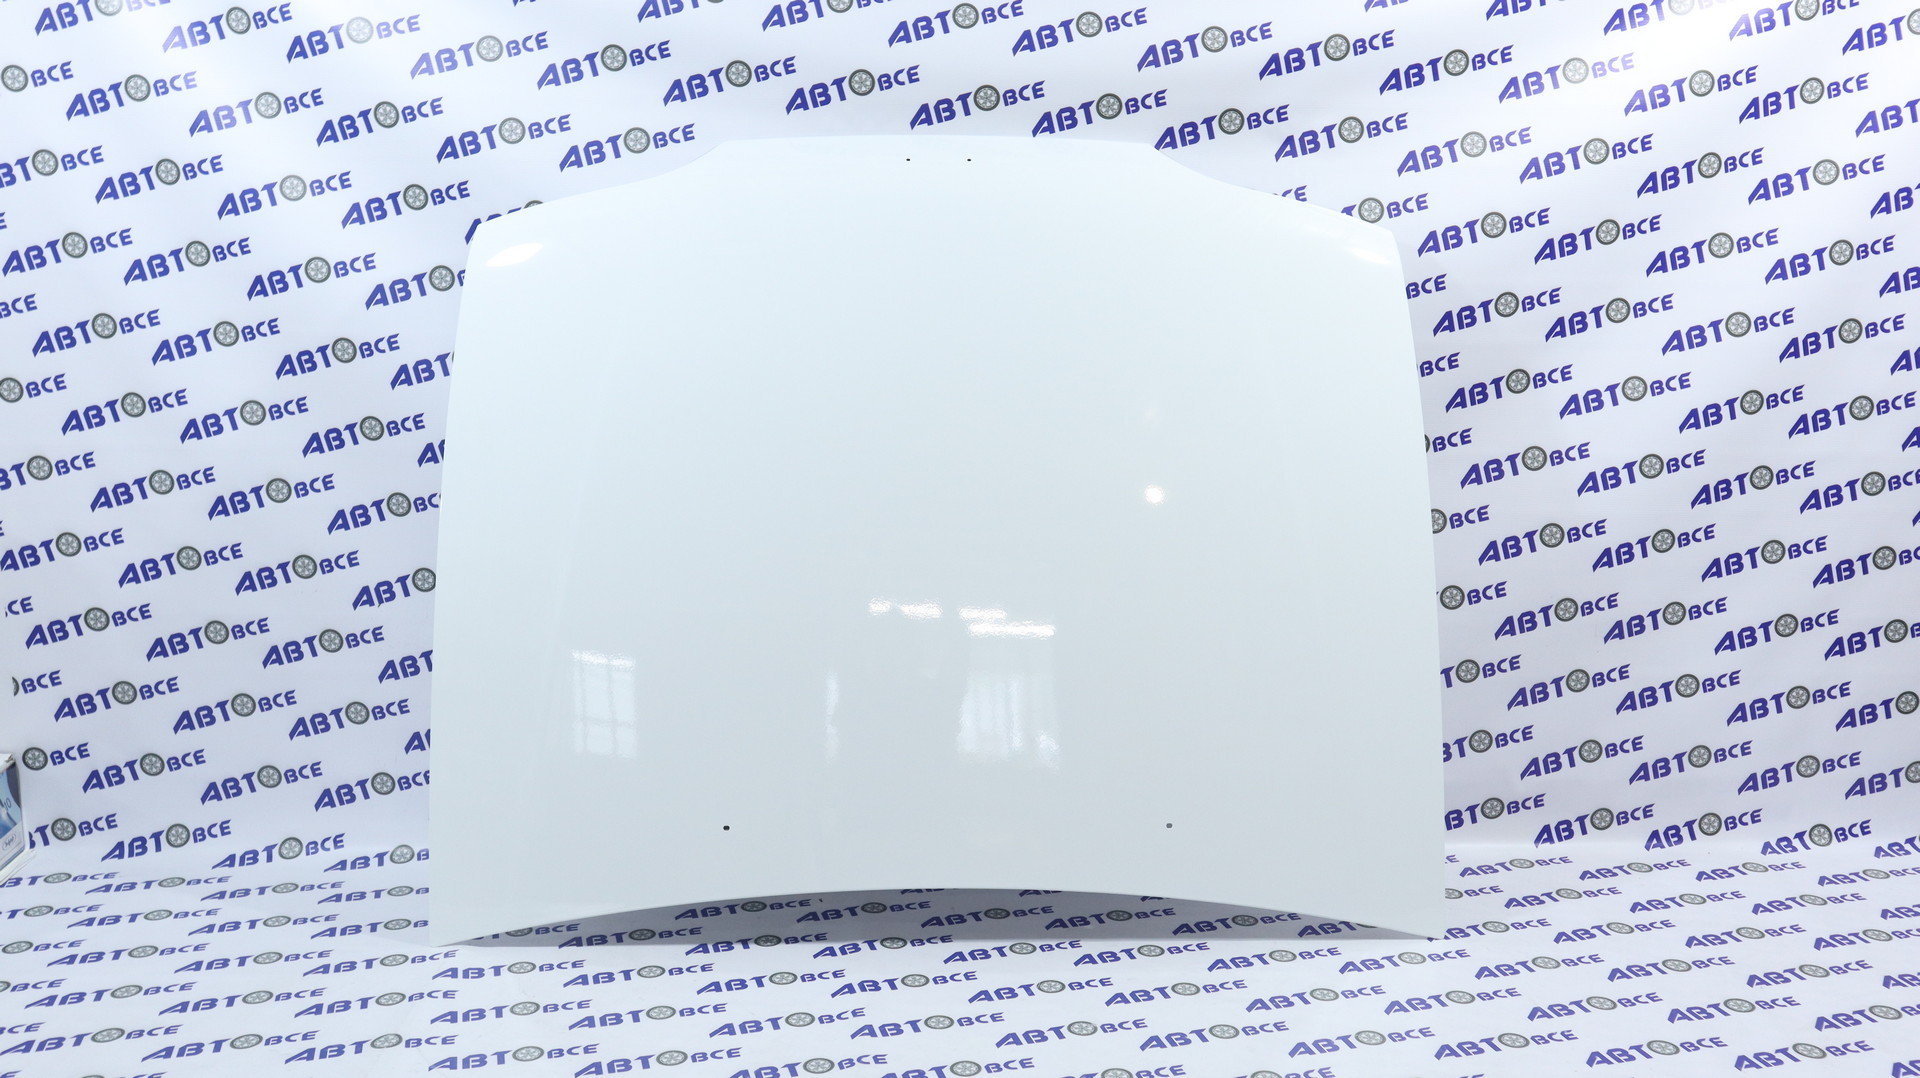 Капот ВАЗ-2113-2114-2115 в цвет Белое облако (240) АвтоВаз